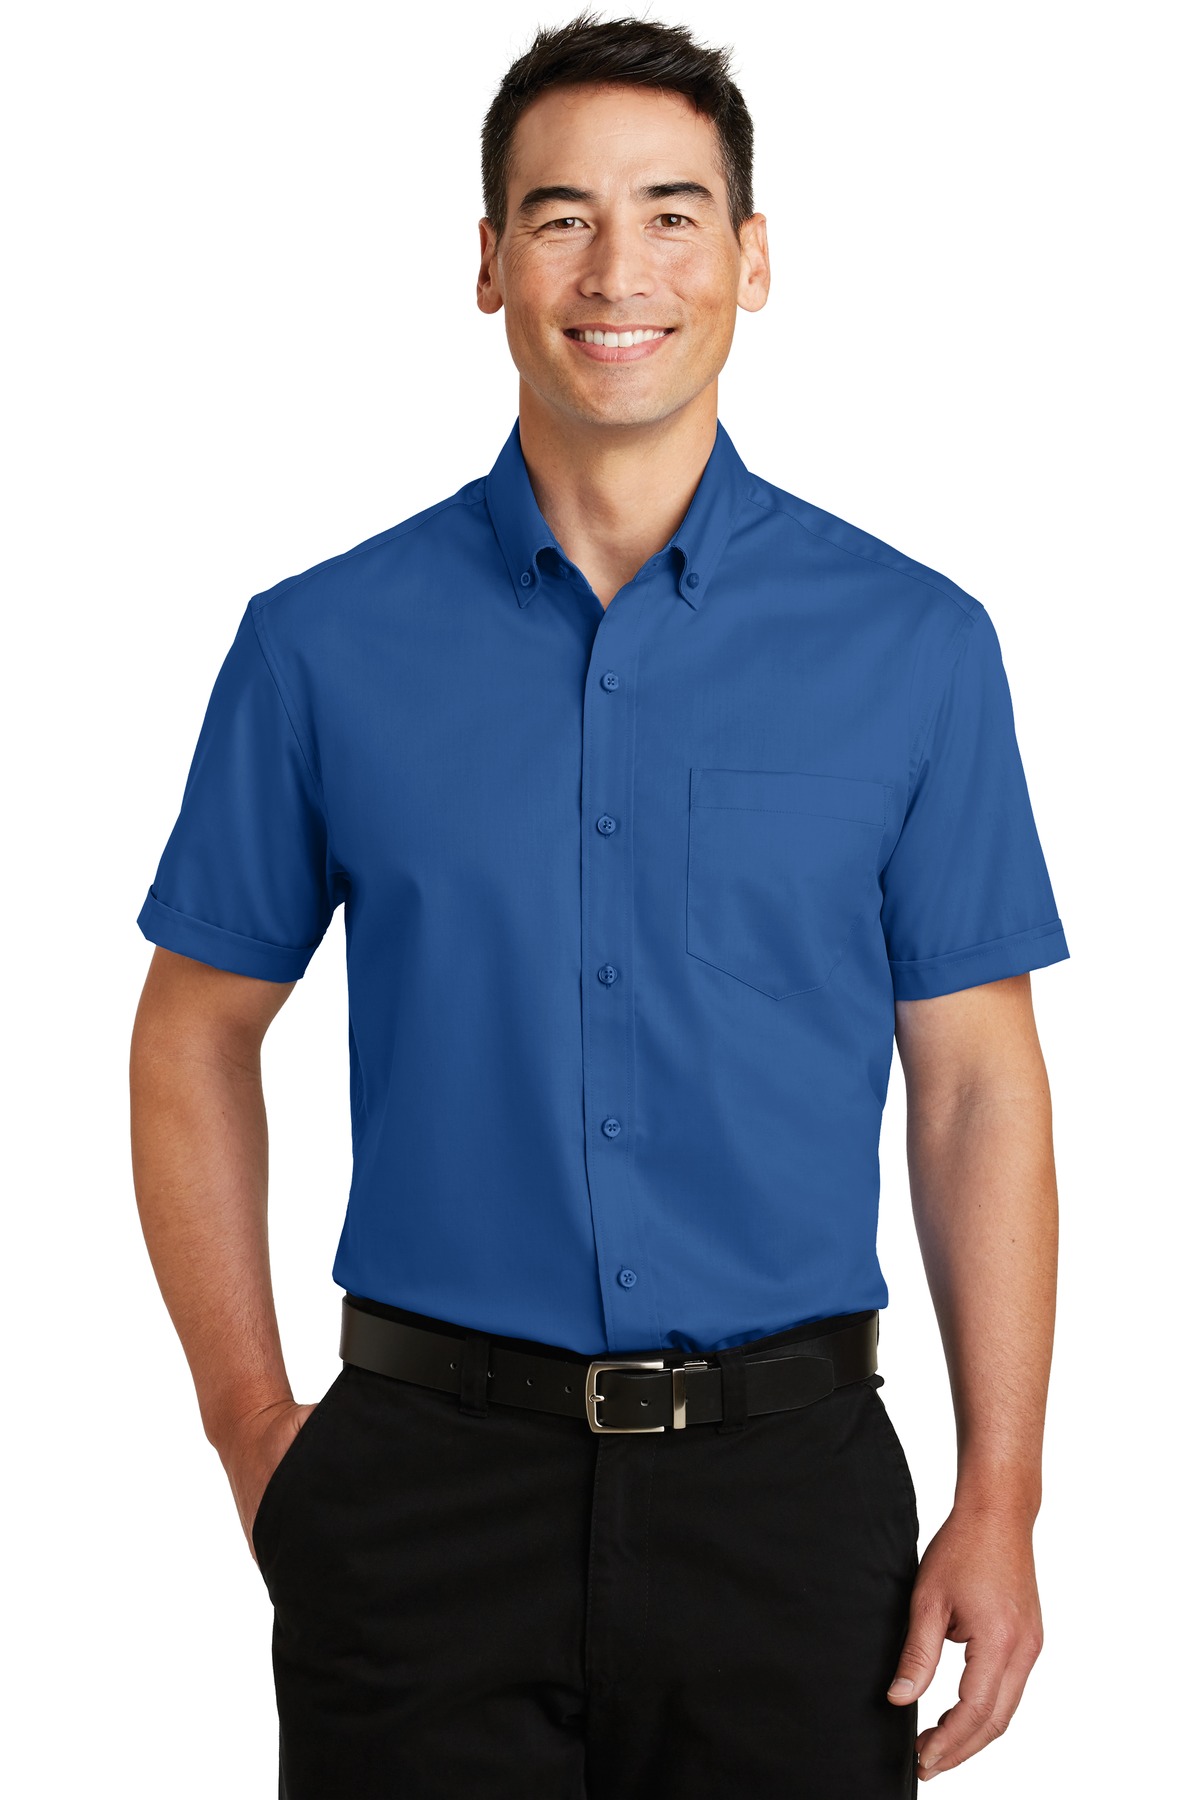 Buy Port Authority® Short Sleeve SuperPro Twill Shirt. - Port Authority ...